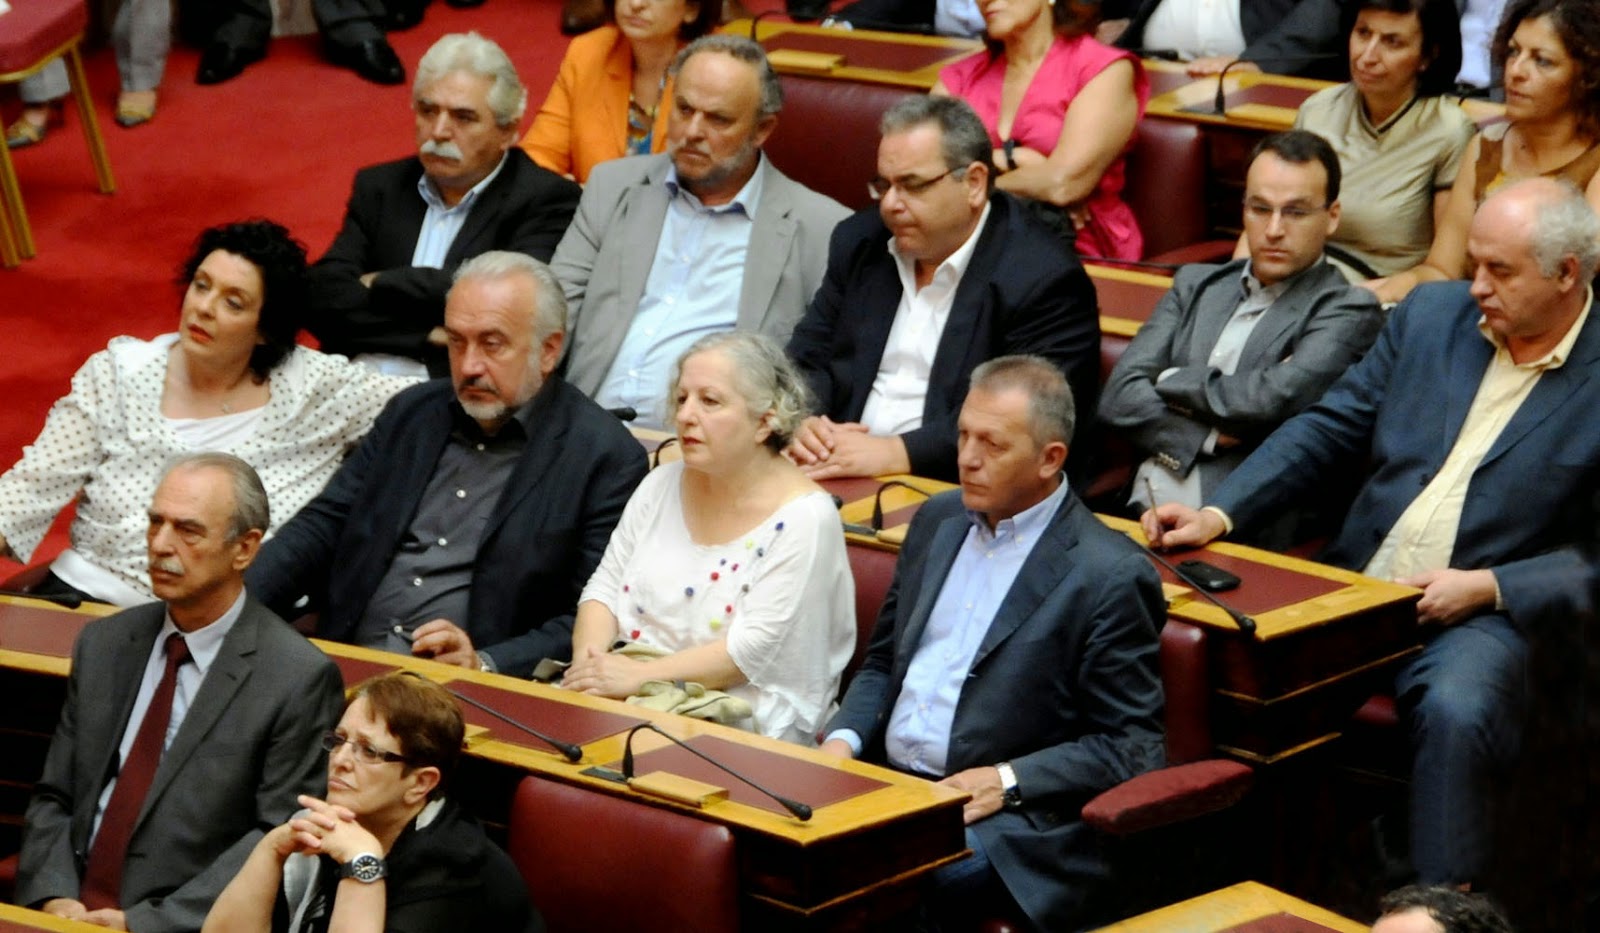 ΚΚΕ: Έτσι ψήφισε για την Αναθεώρηση του Συντάγματος – Που συμφώνησε με ΣΥΡΙΖΑ και ΝΔ